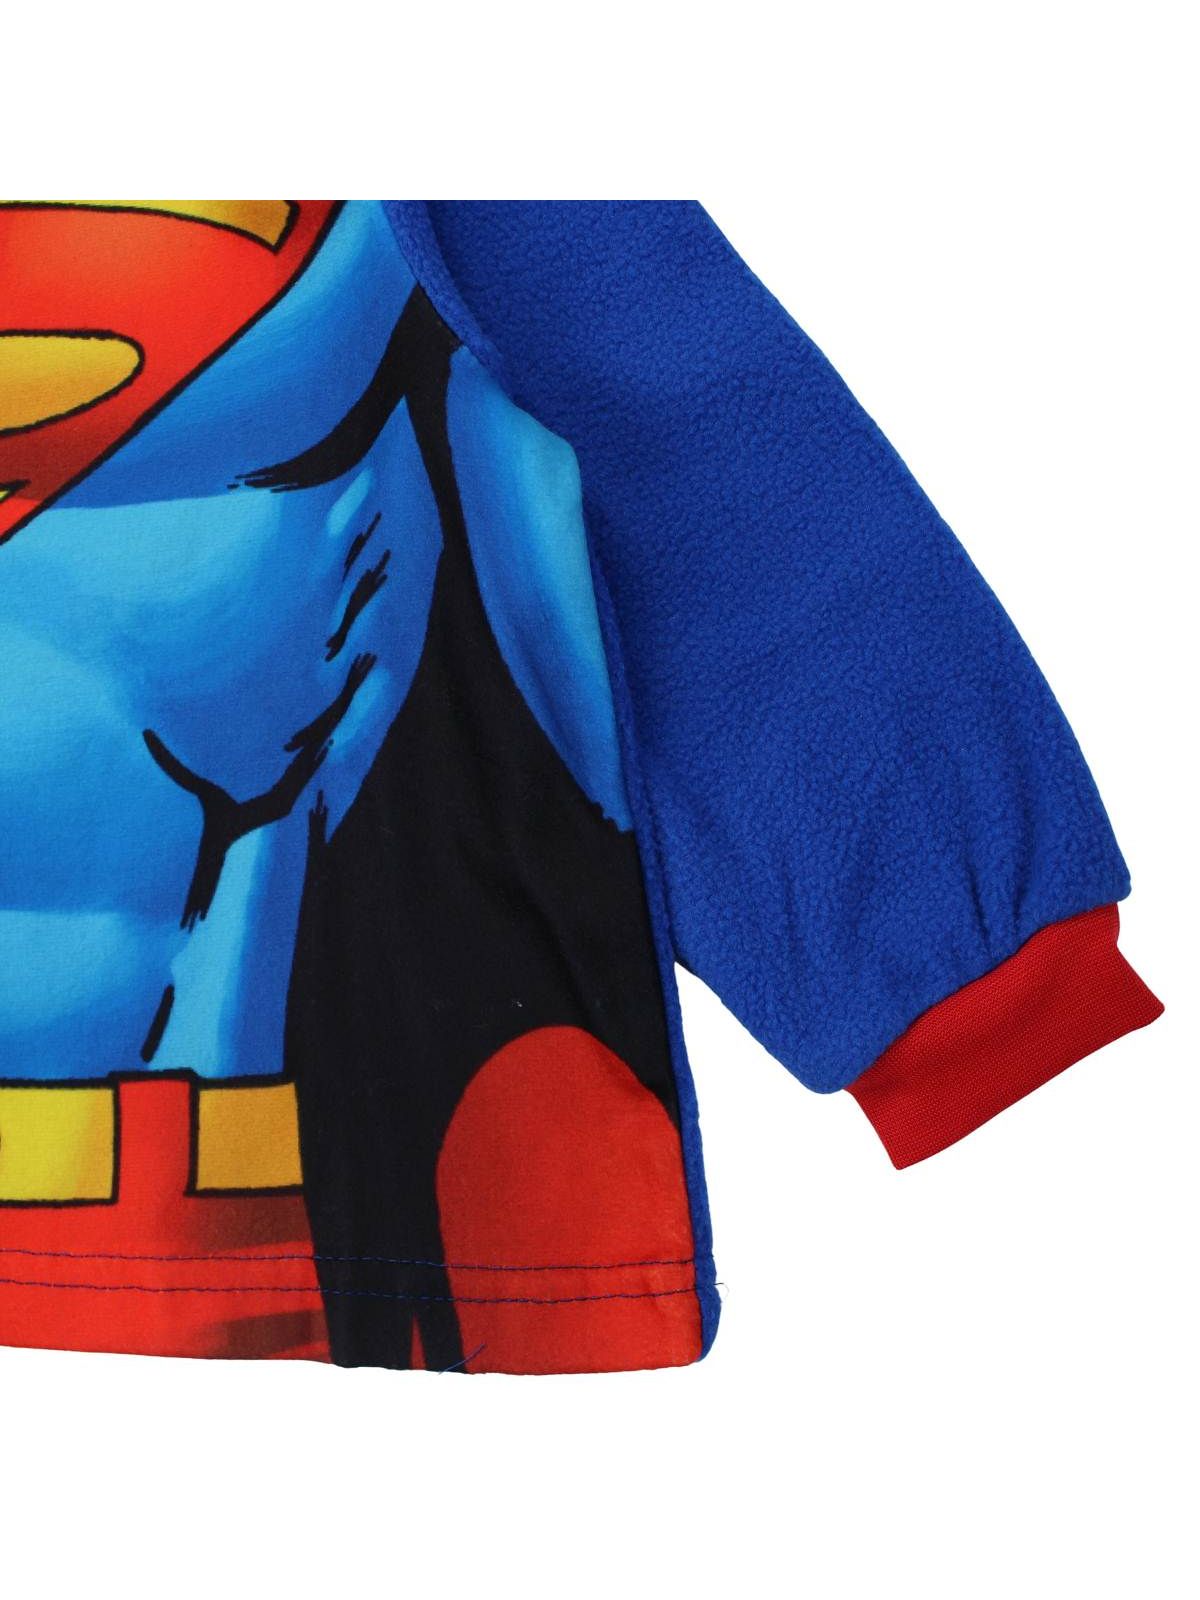 Superman fleece pajamas